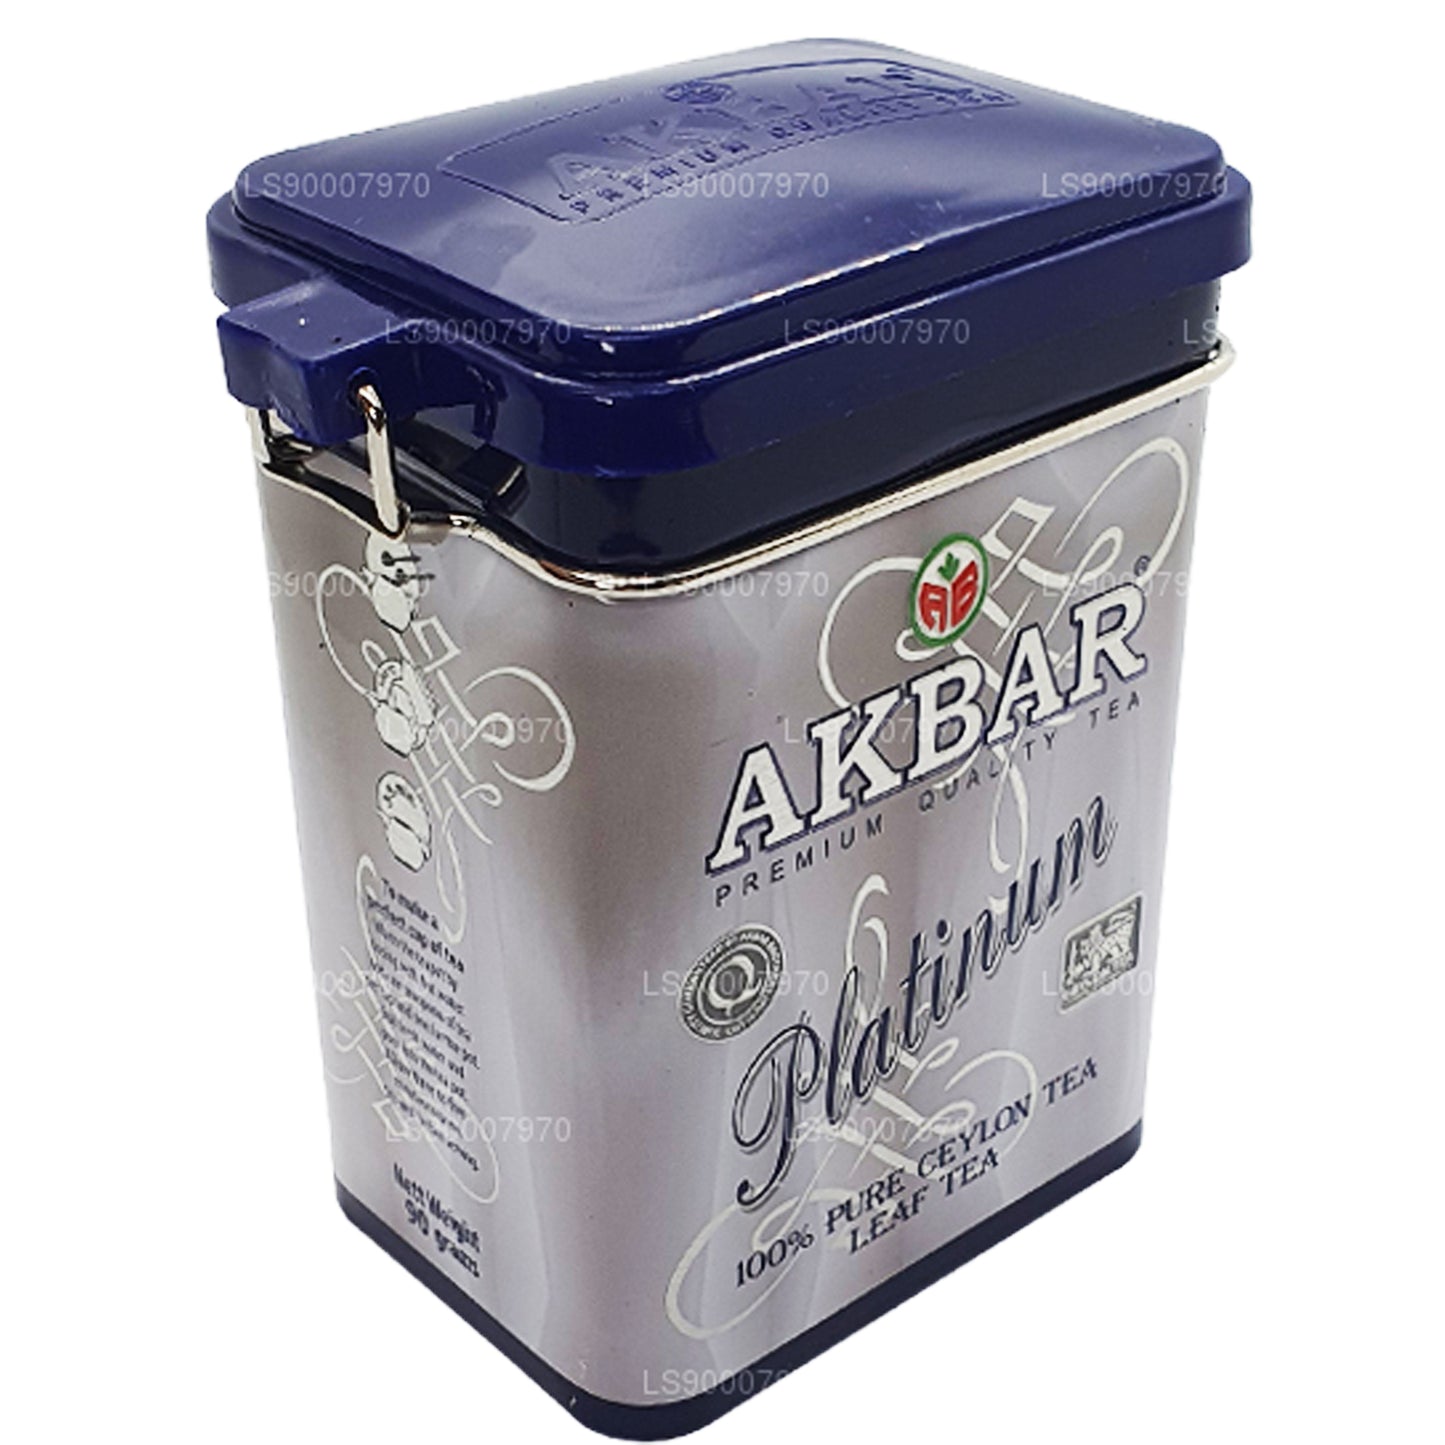 Akbar Platinum Leaf Tea (90g)